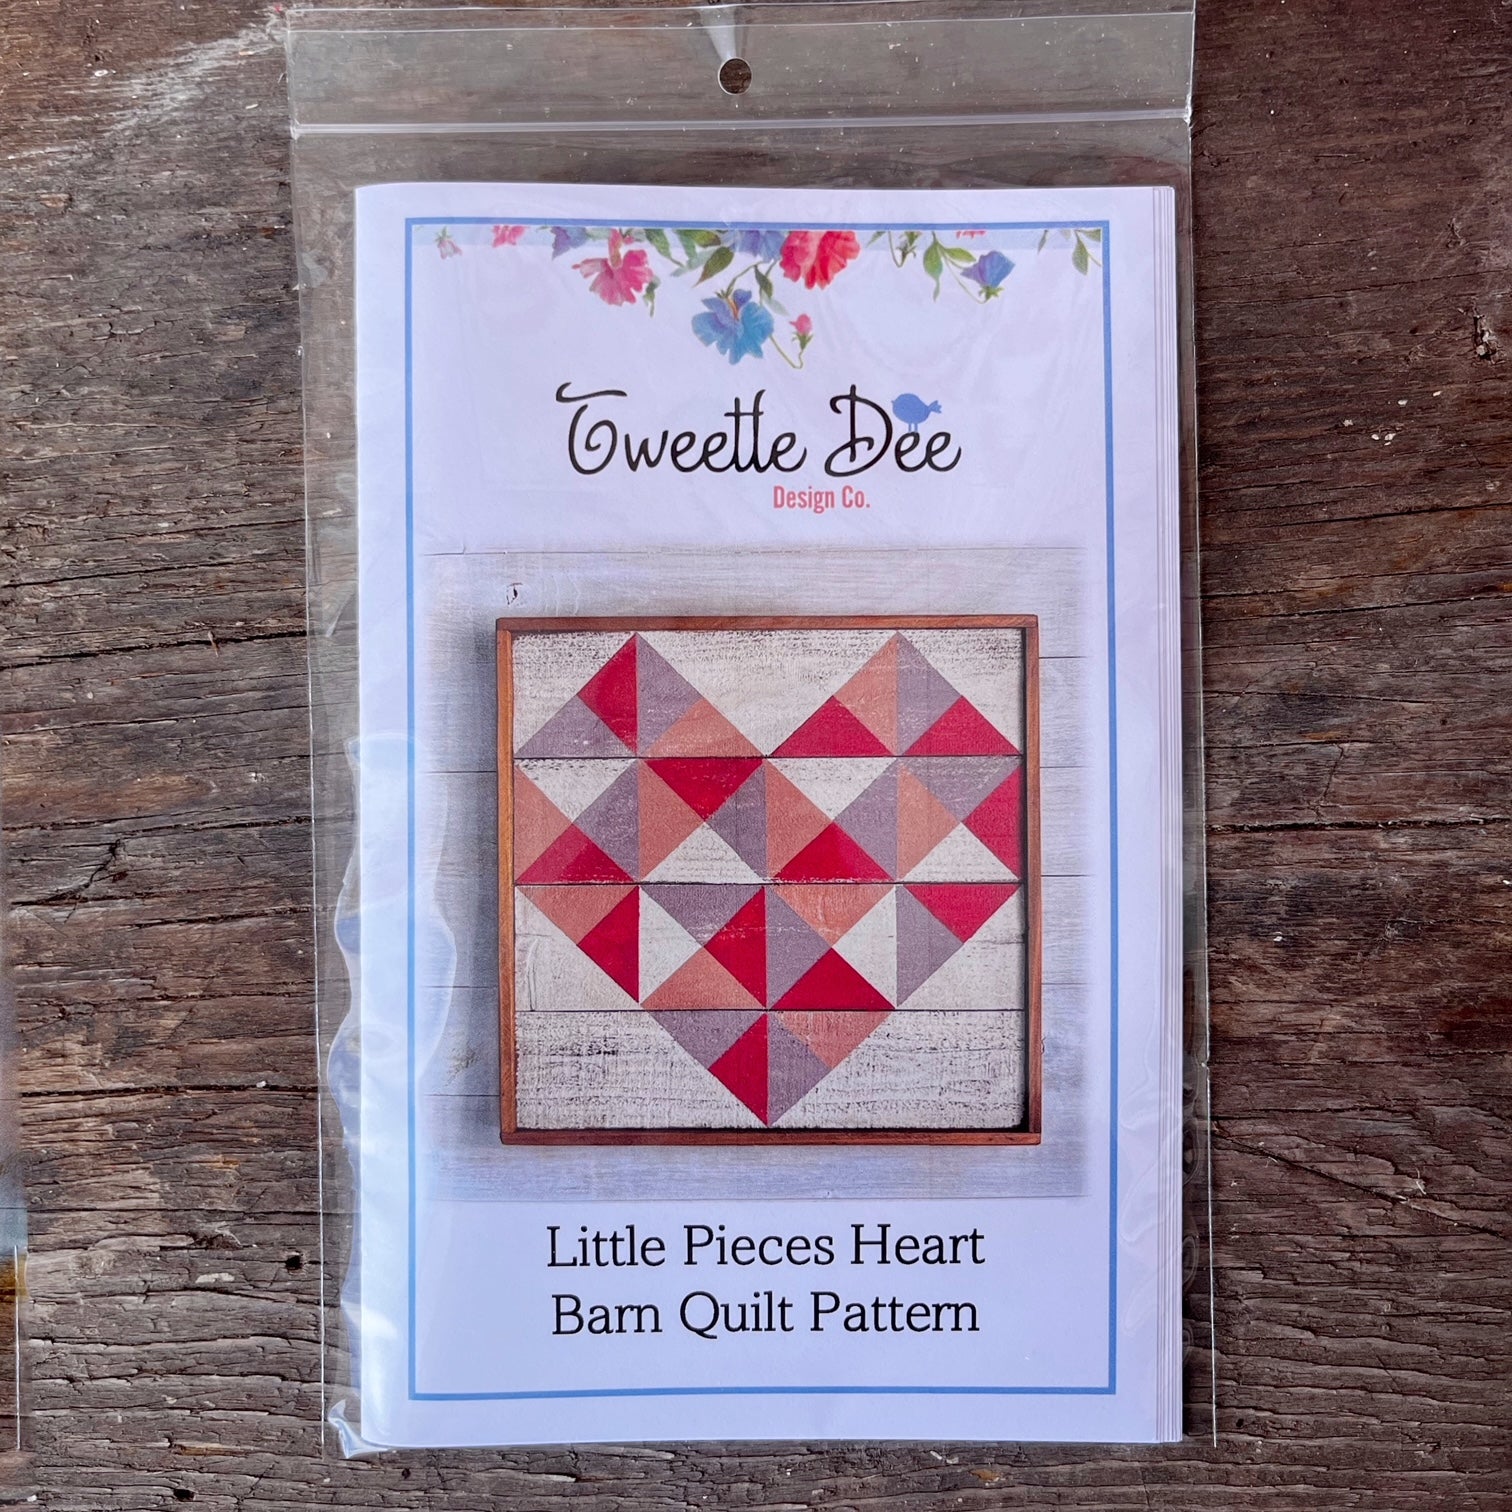 Little Pieces Heart Barn Quilt Pattern